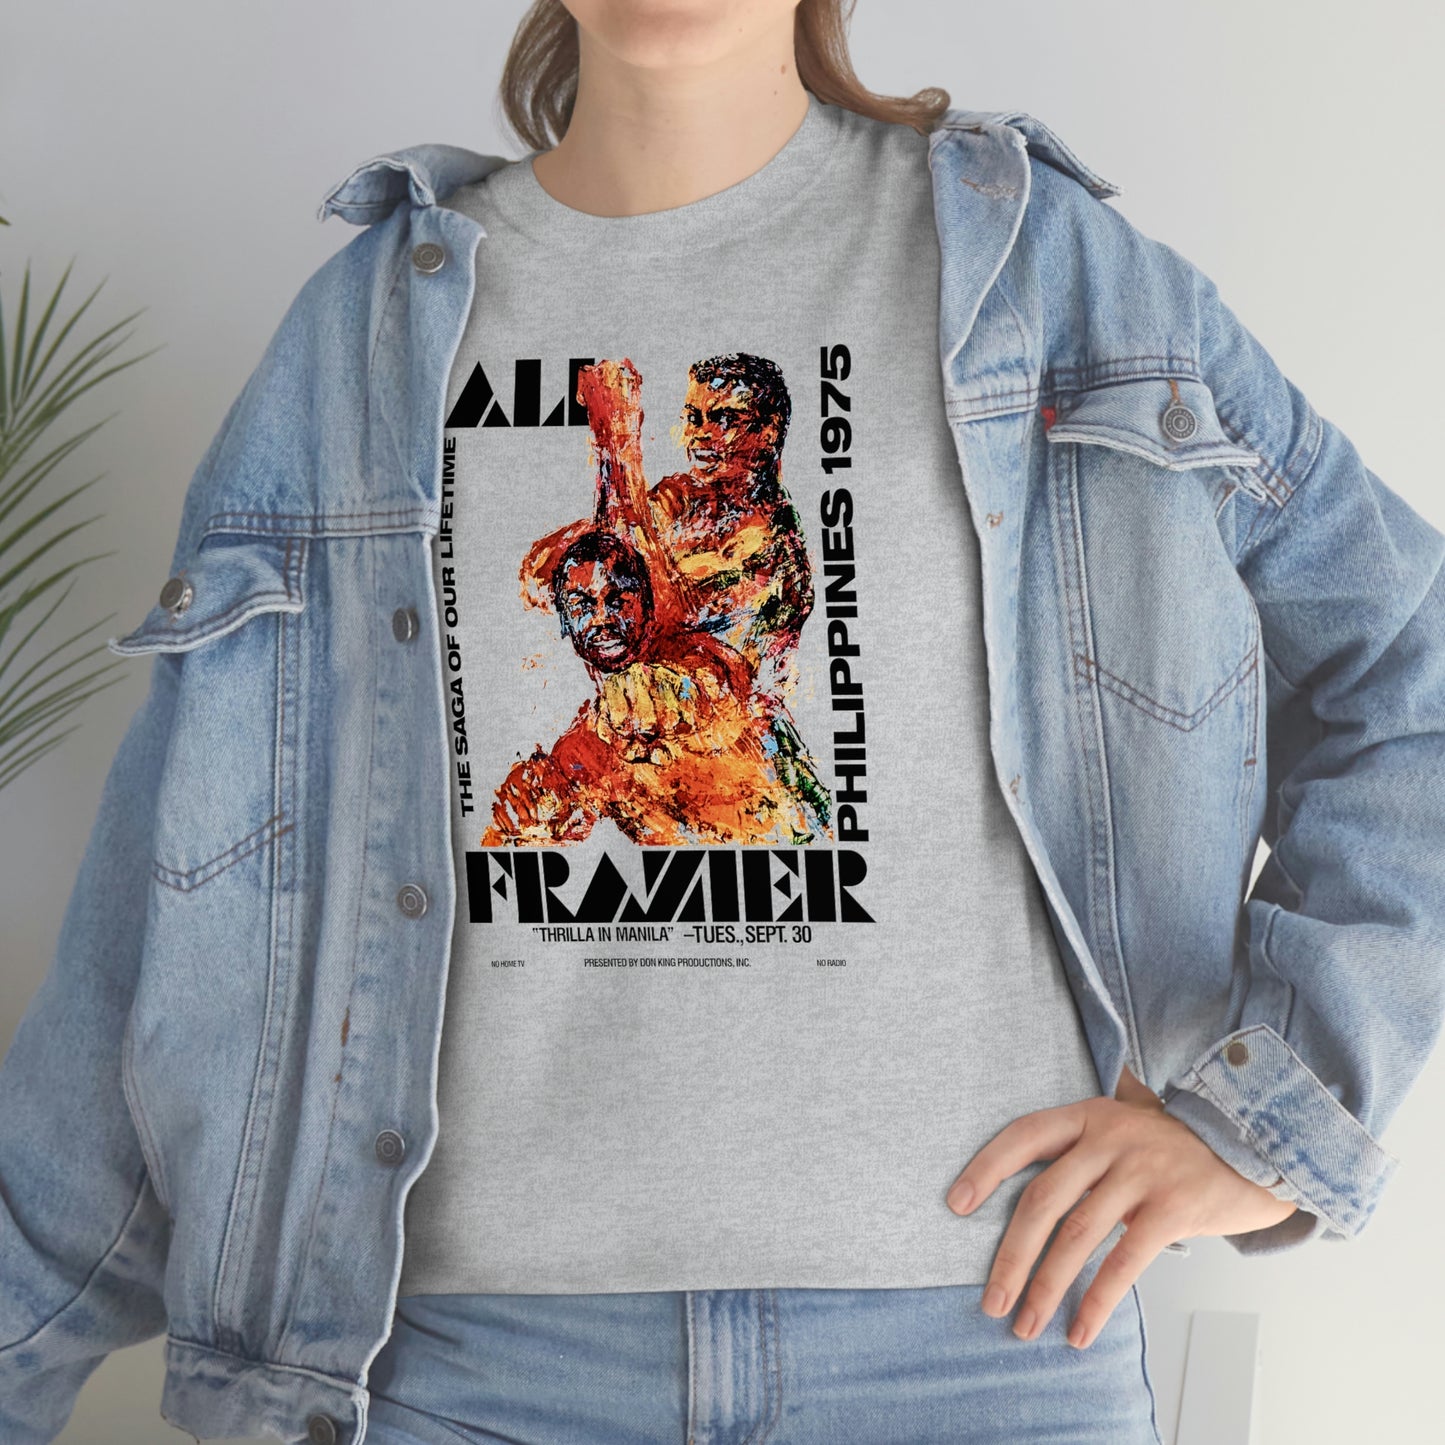 Frazier Vs. Ali T-Shirt